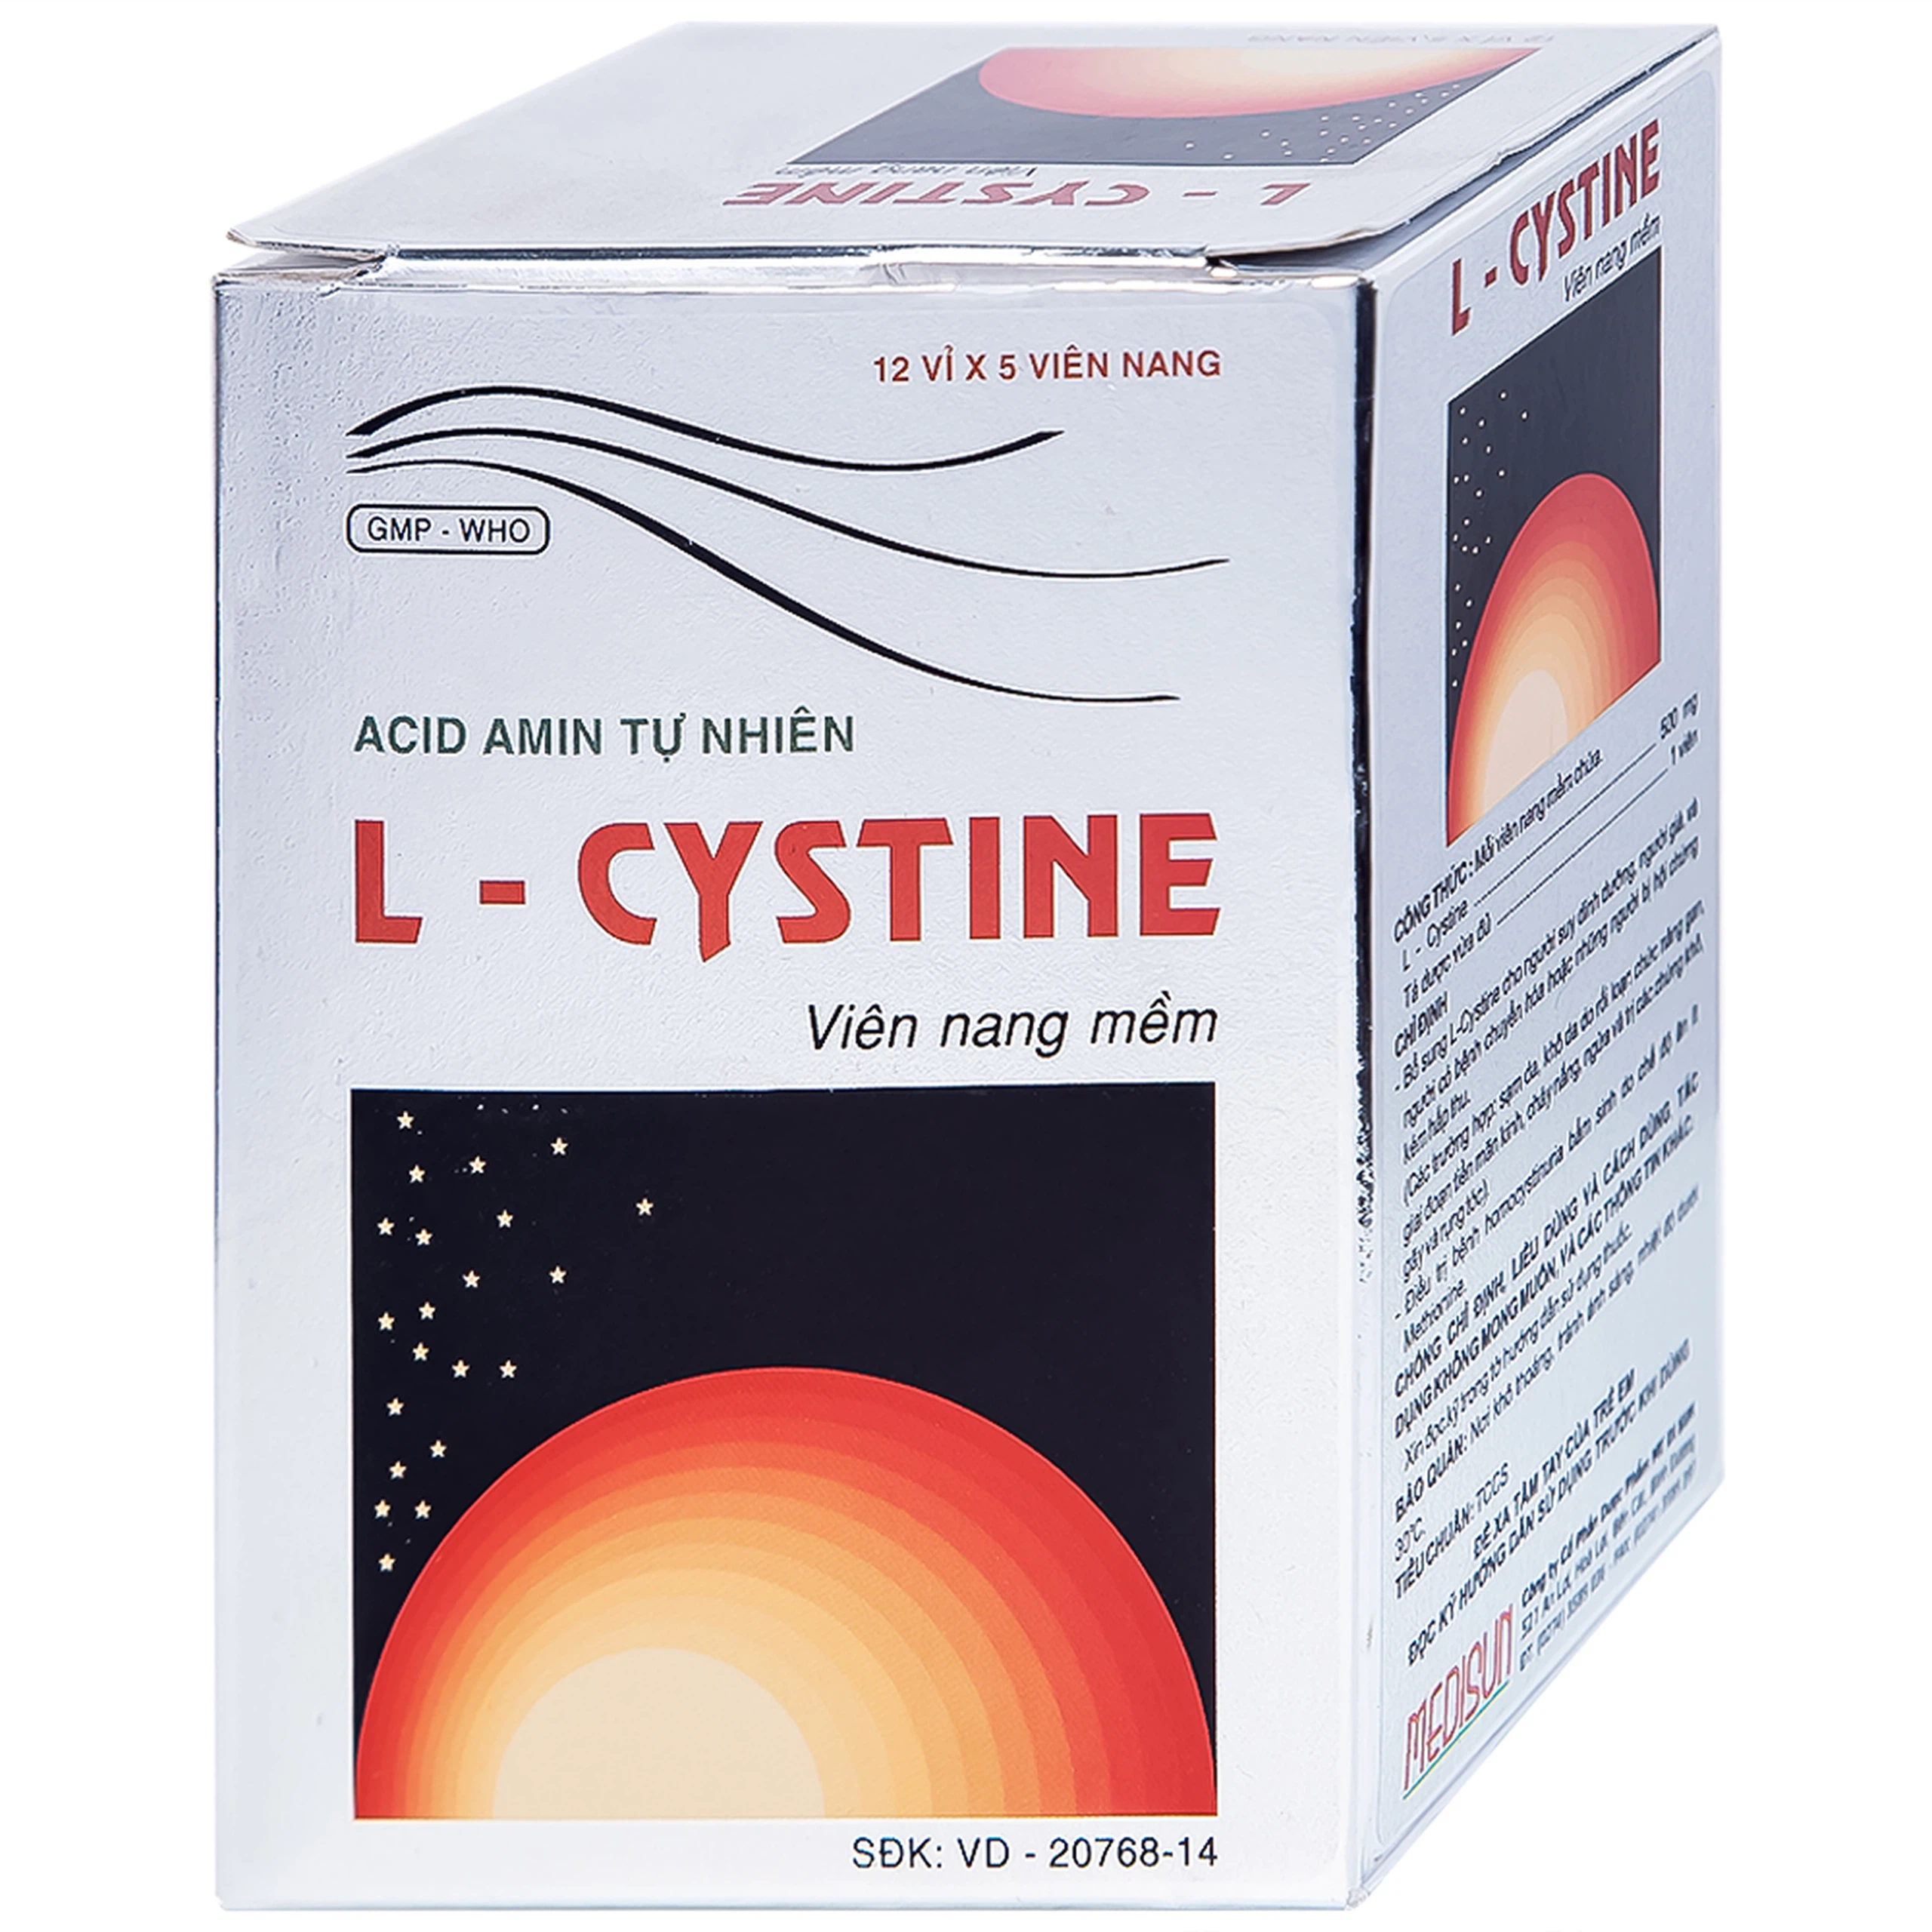 Viên nang mềm L-Cystine 500mg Medisun bổ sung cho người suy dinh dưỡng, kém hấp thu, sạm da (12 vỉ x 5 viên)